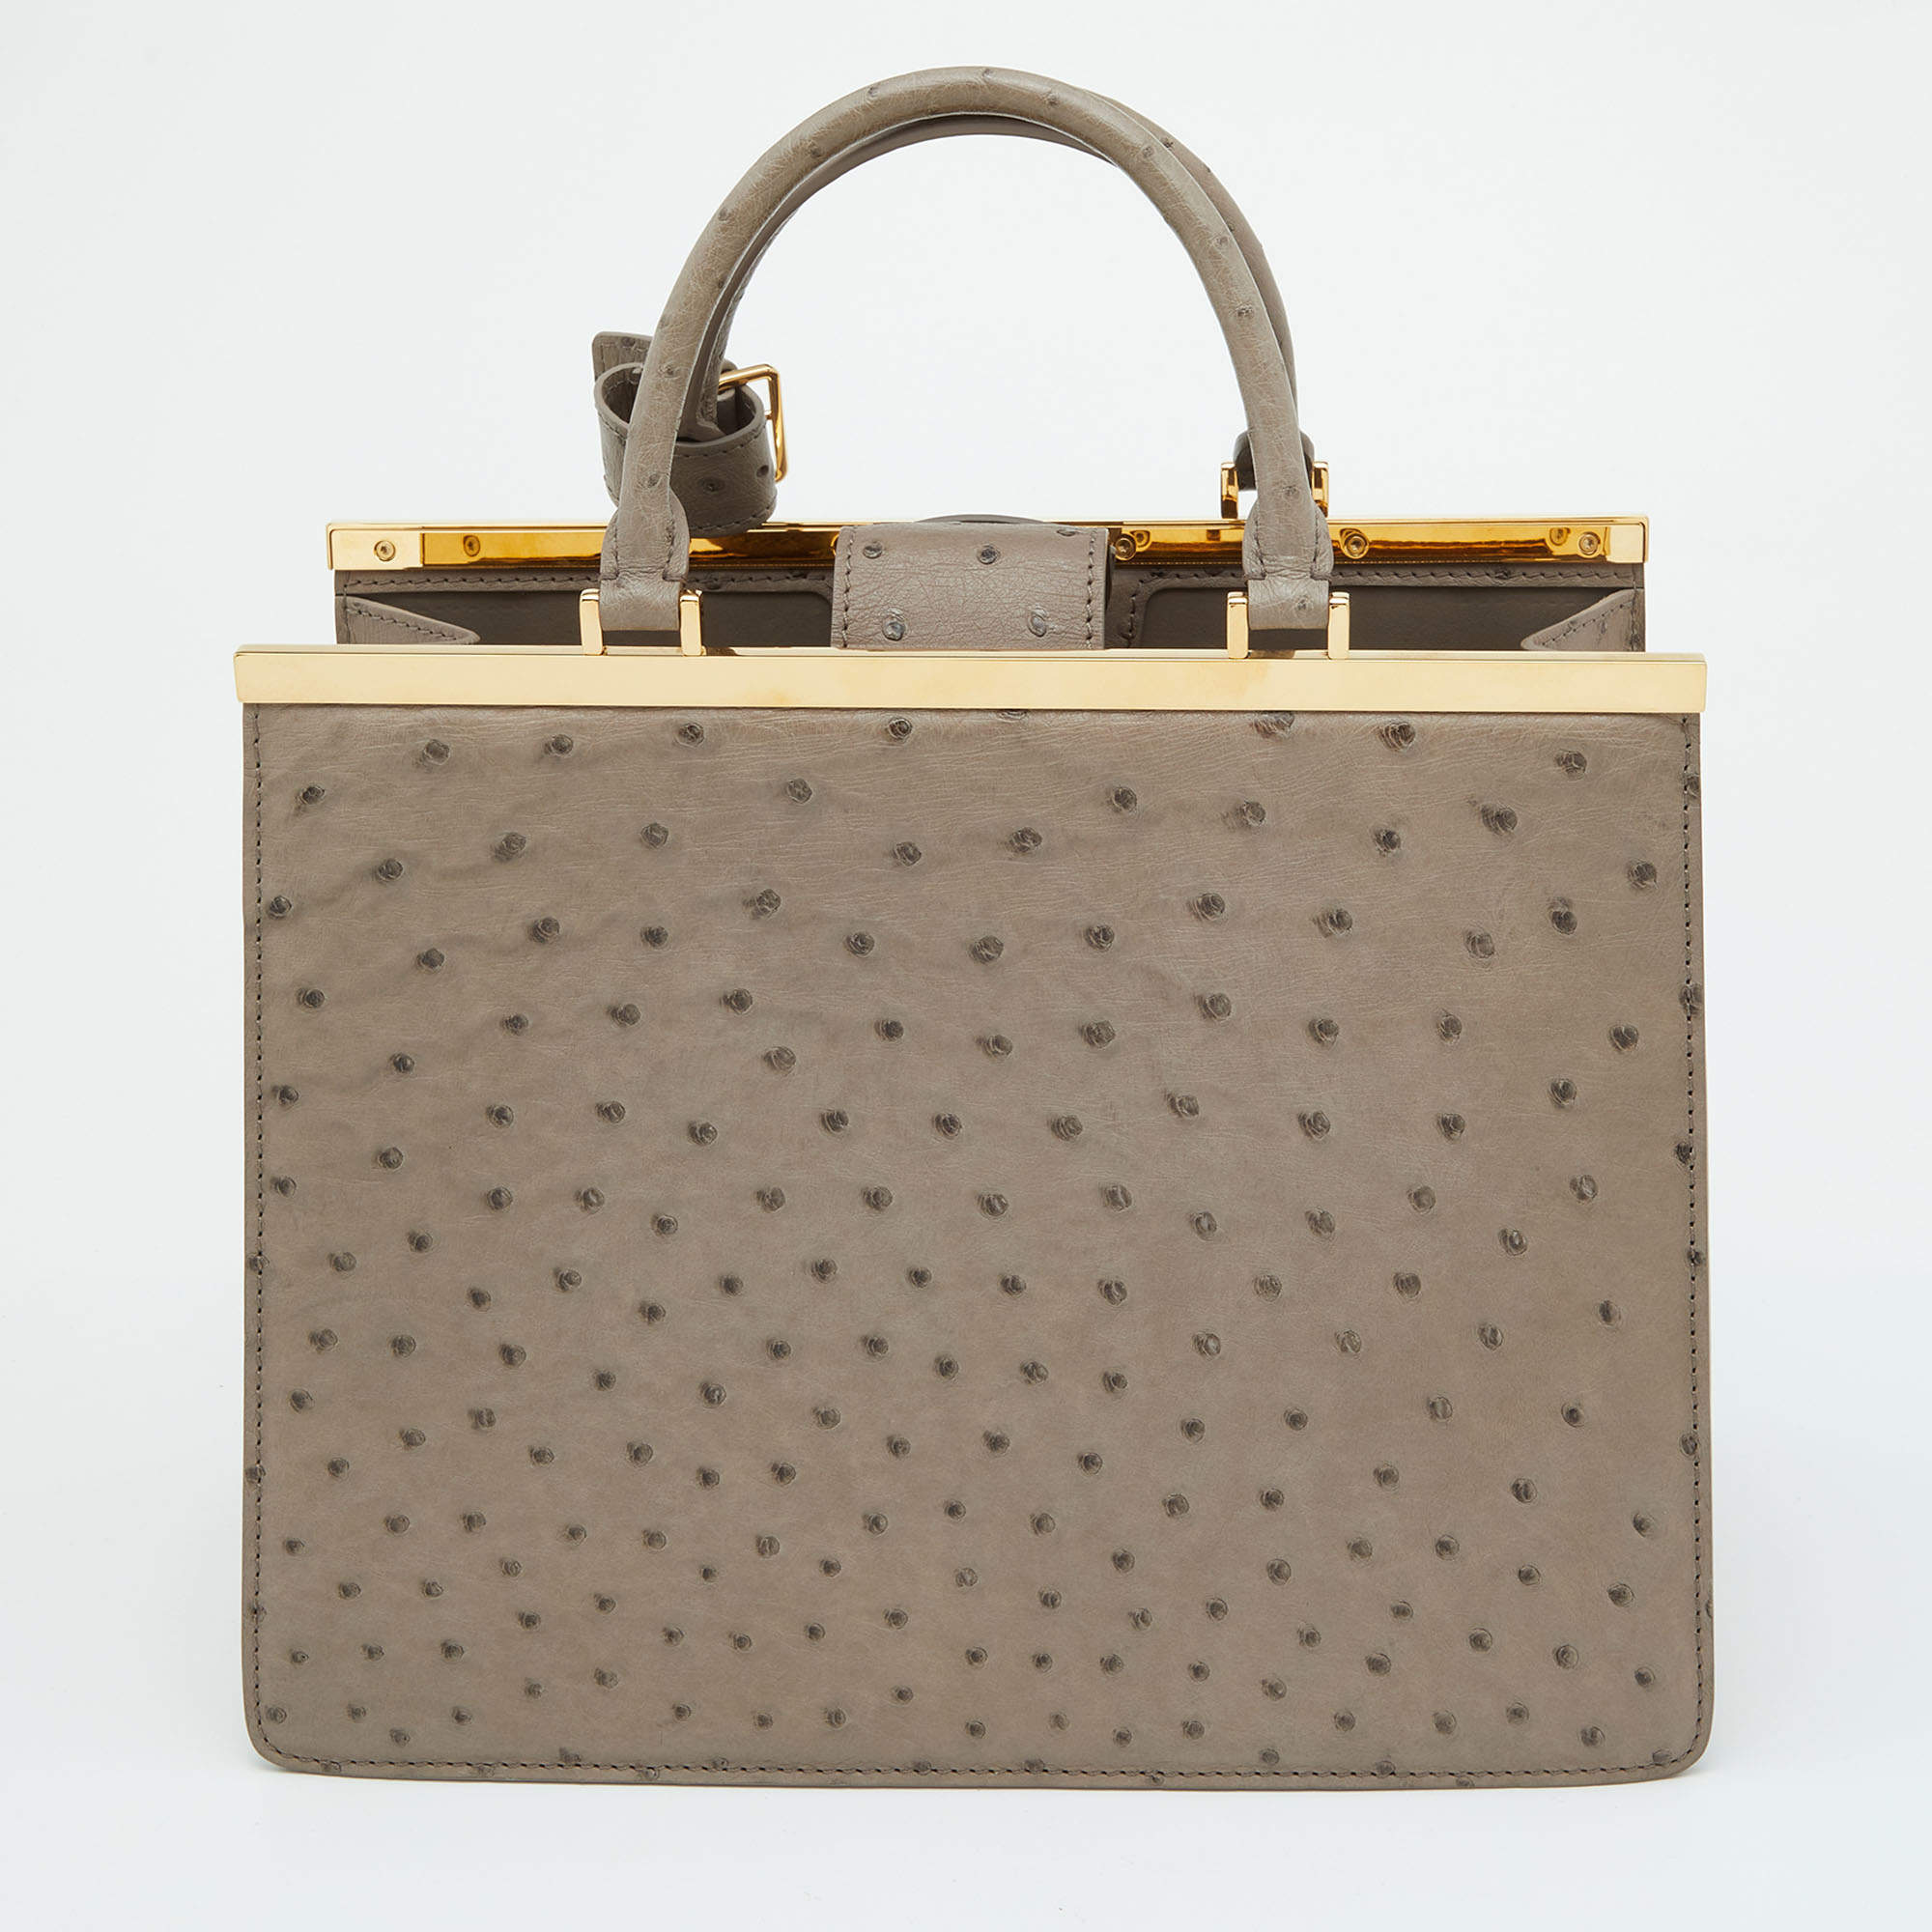 Louis Vuitton 2021 Rose Des Vents PM Ostrich - Green Handle Bags, Handbags  - LOU586723